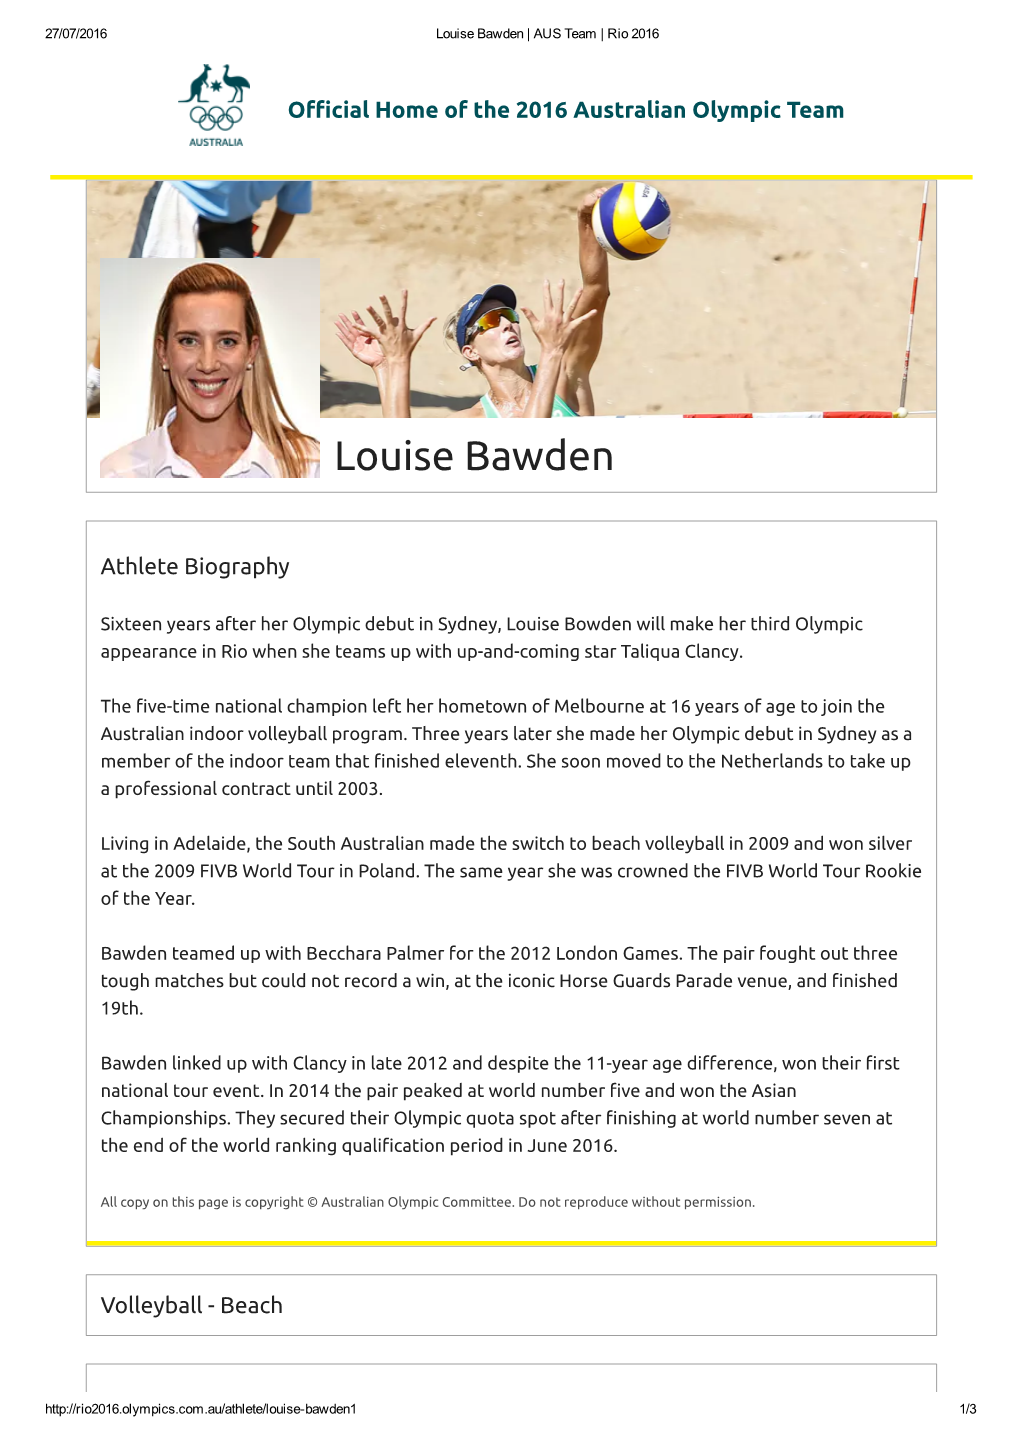 Louise Bawden | AUS Team | Rio 2016